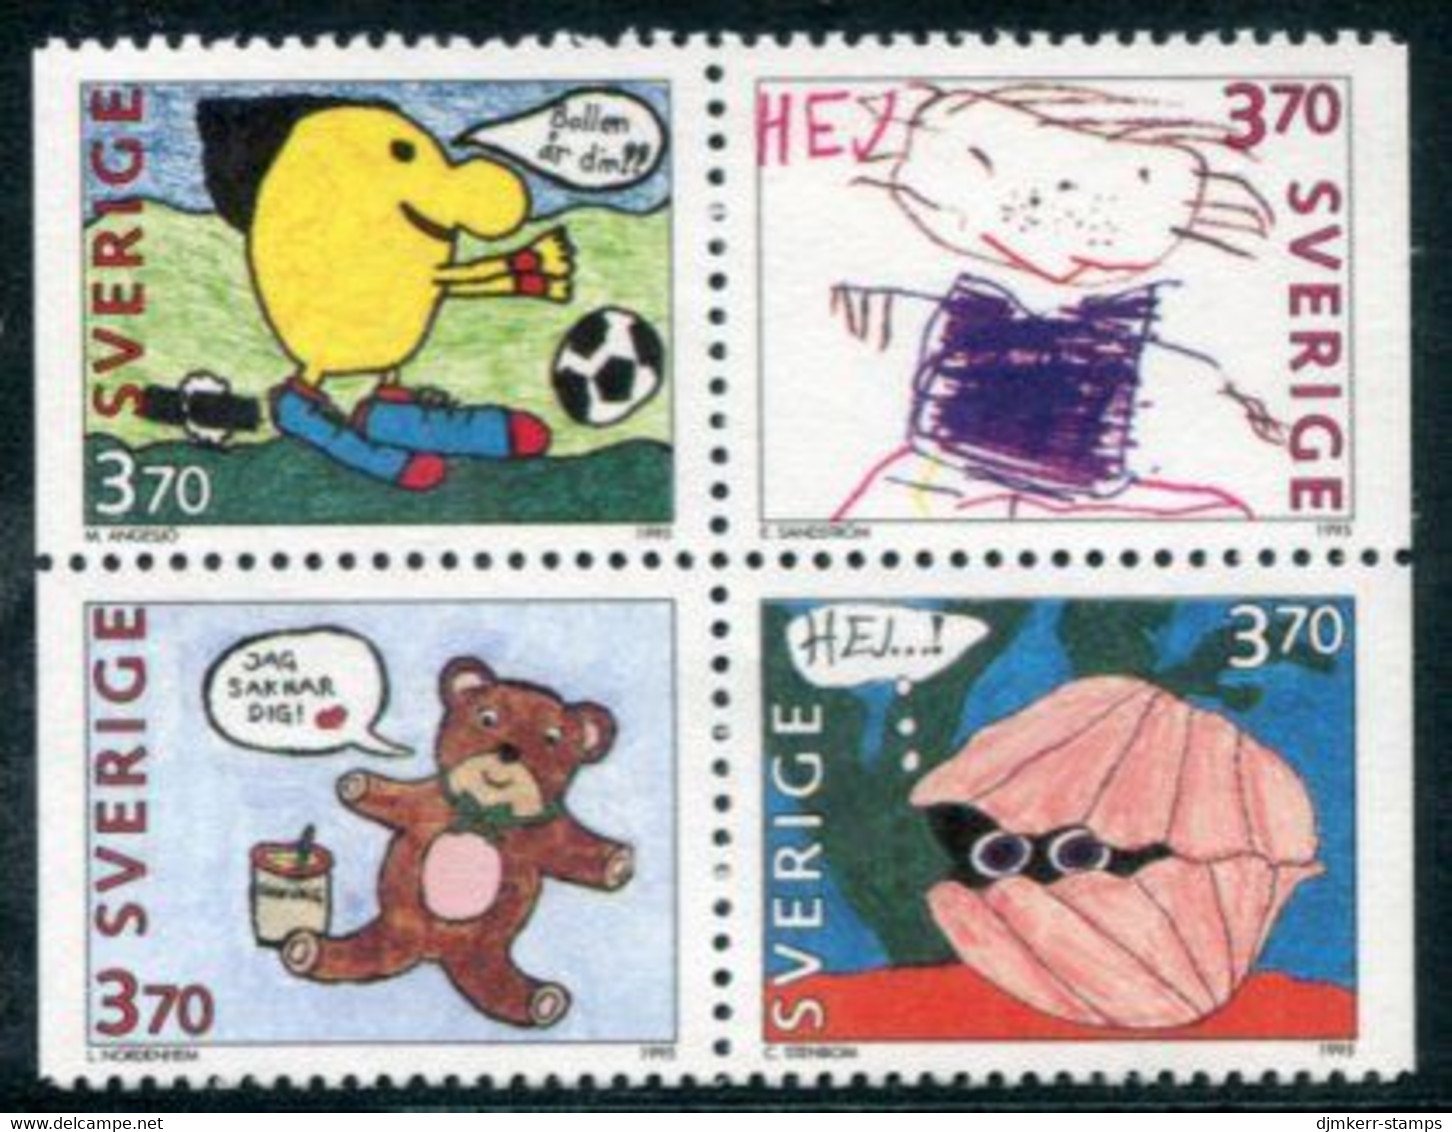 SWEDEN 1995 Greetings Stamps MNH / **  Michel 1894-97 - Ongebruikt